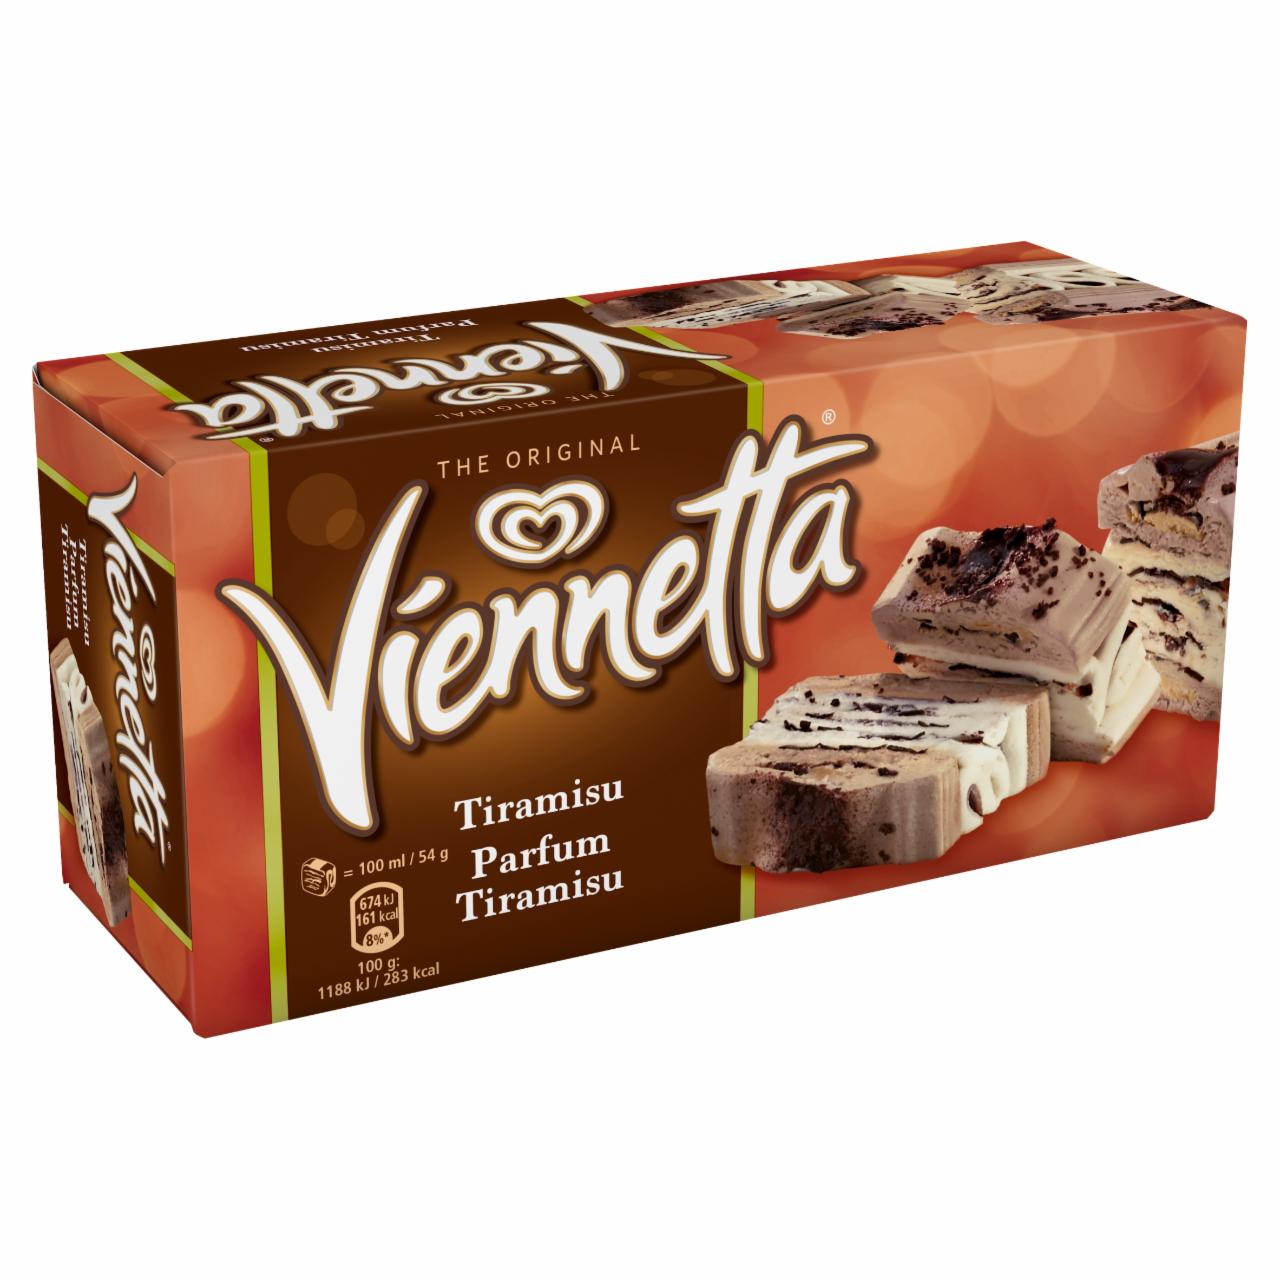 Képek - Viennetta tiramisu ízű jégkrém és kávés jégkrém kakaós bevonó rétegekkel, kekszdarabkákkal 650 ml